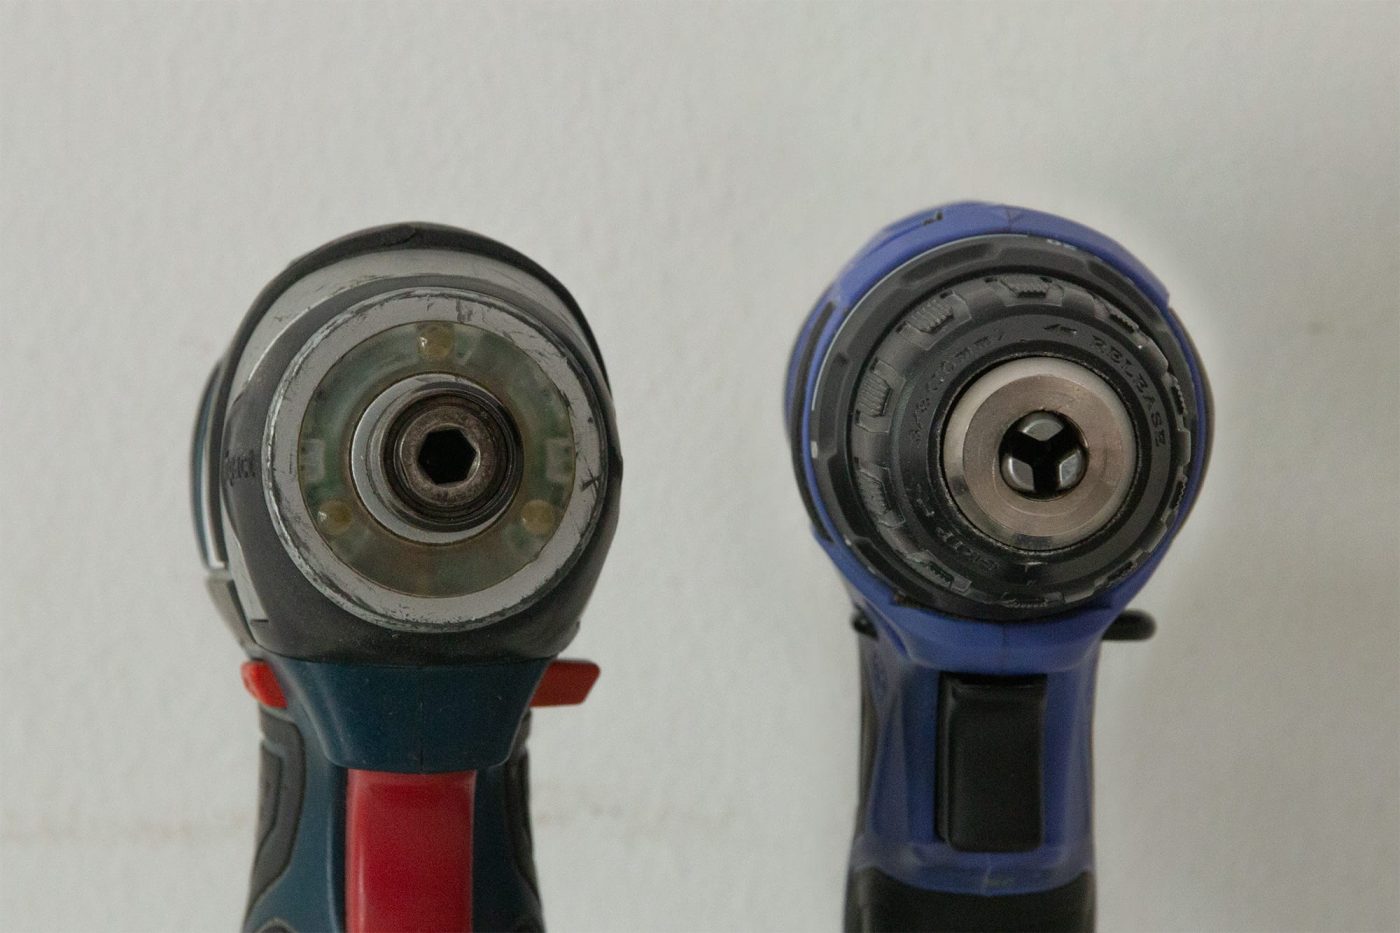 先端パーツをつけるチャックの形状の違い。インパクトドライバー（左）は六角軸を差し込んで使用するが、電動ドリルドライバーは3本の爪で軸を挟んで固定する。